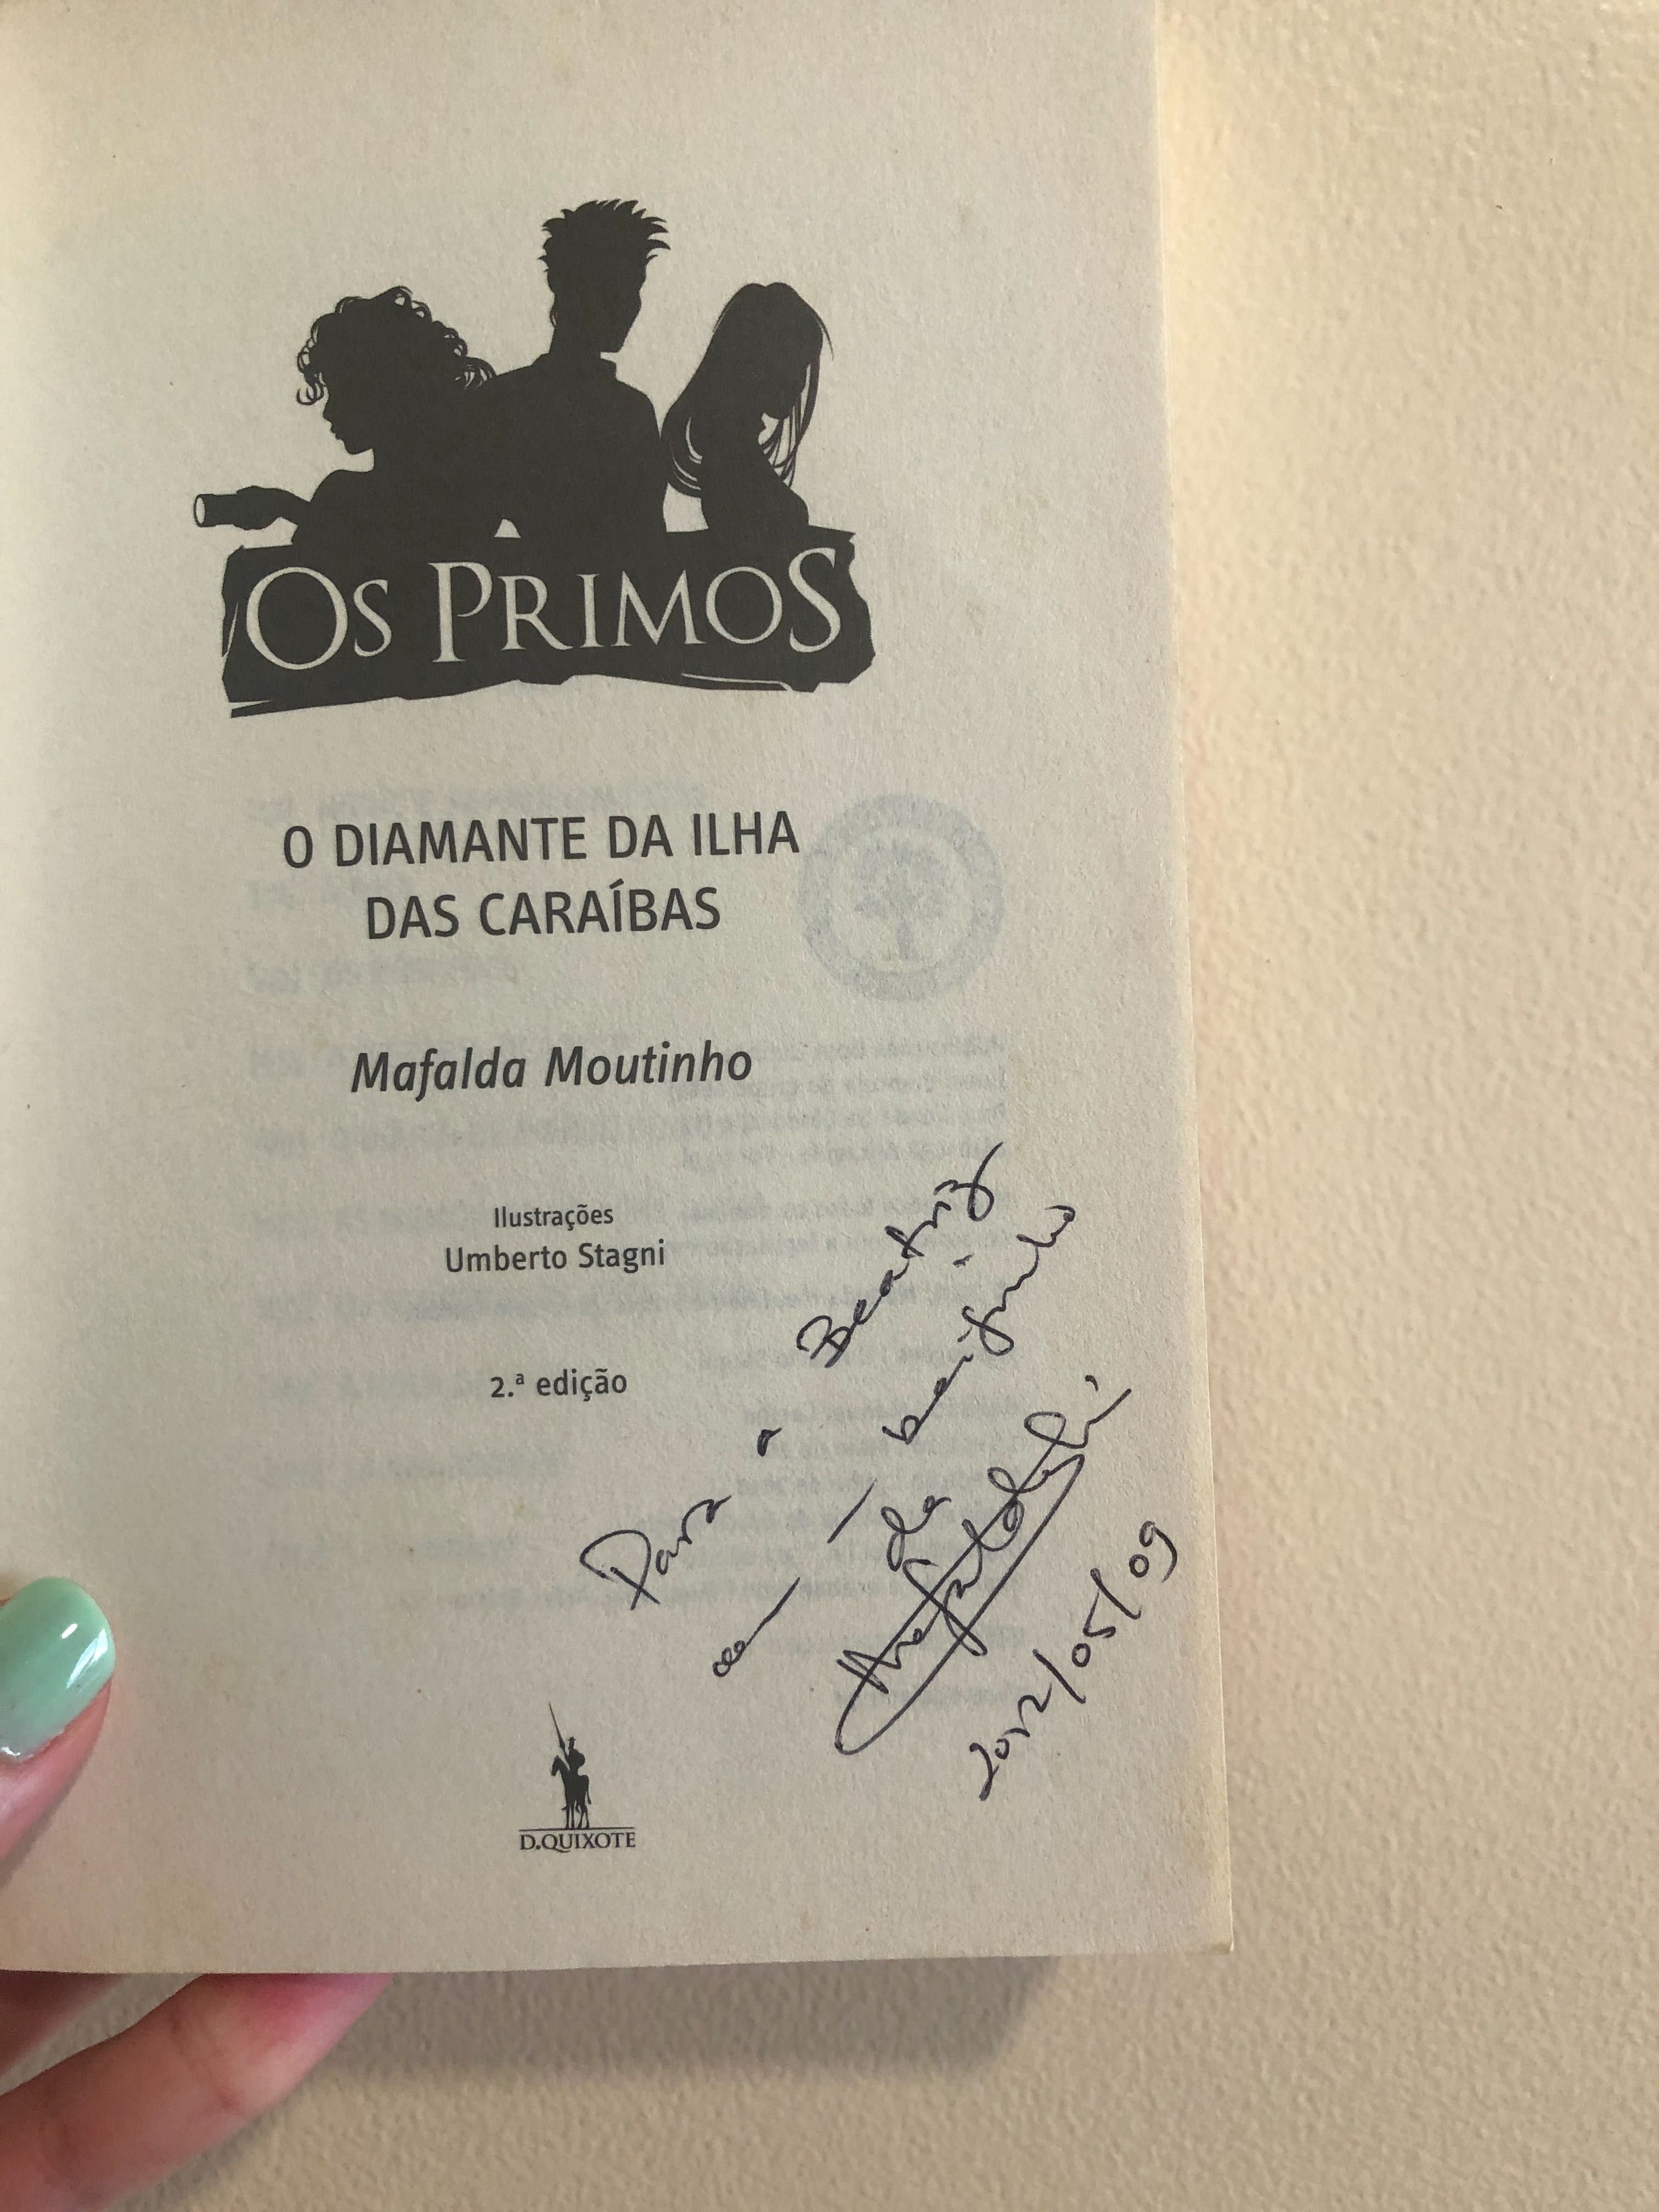 Livro "O diamante da ilha das caraíbas" de Mafalda Moutinho